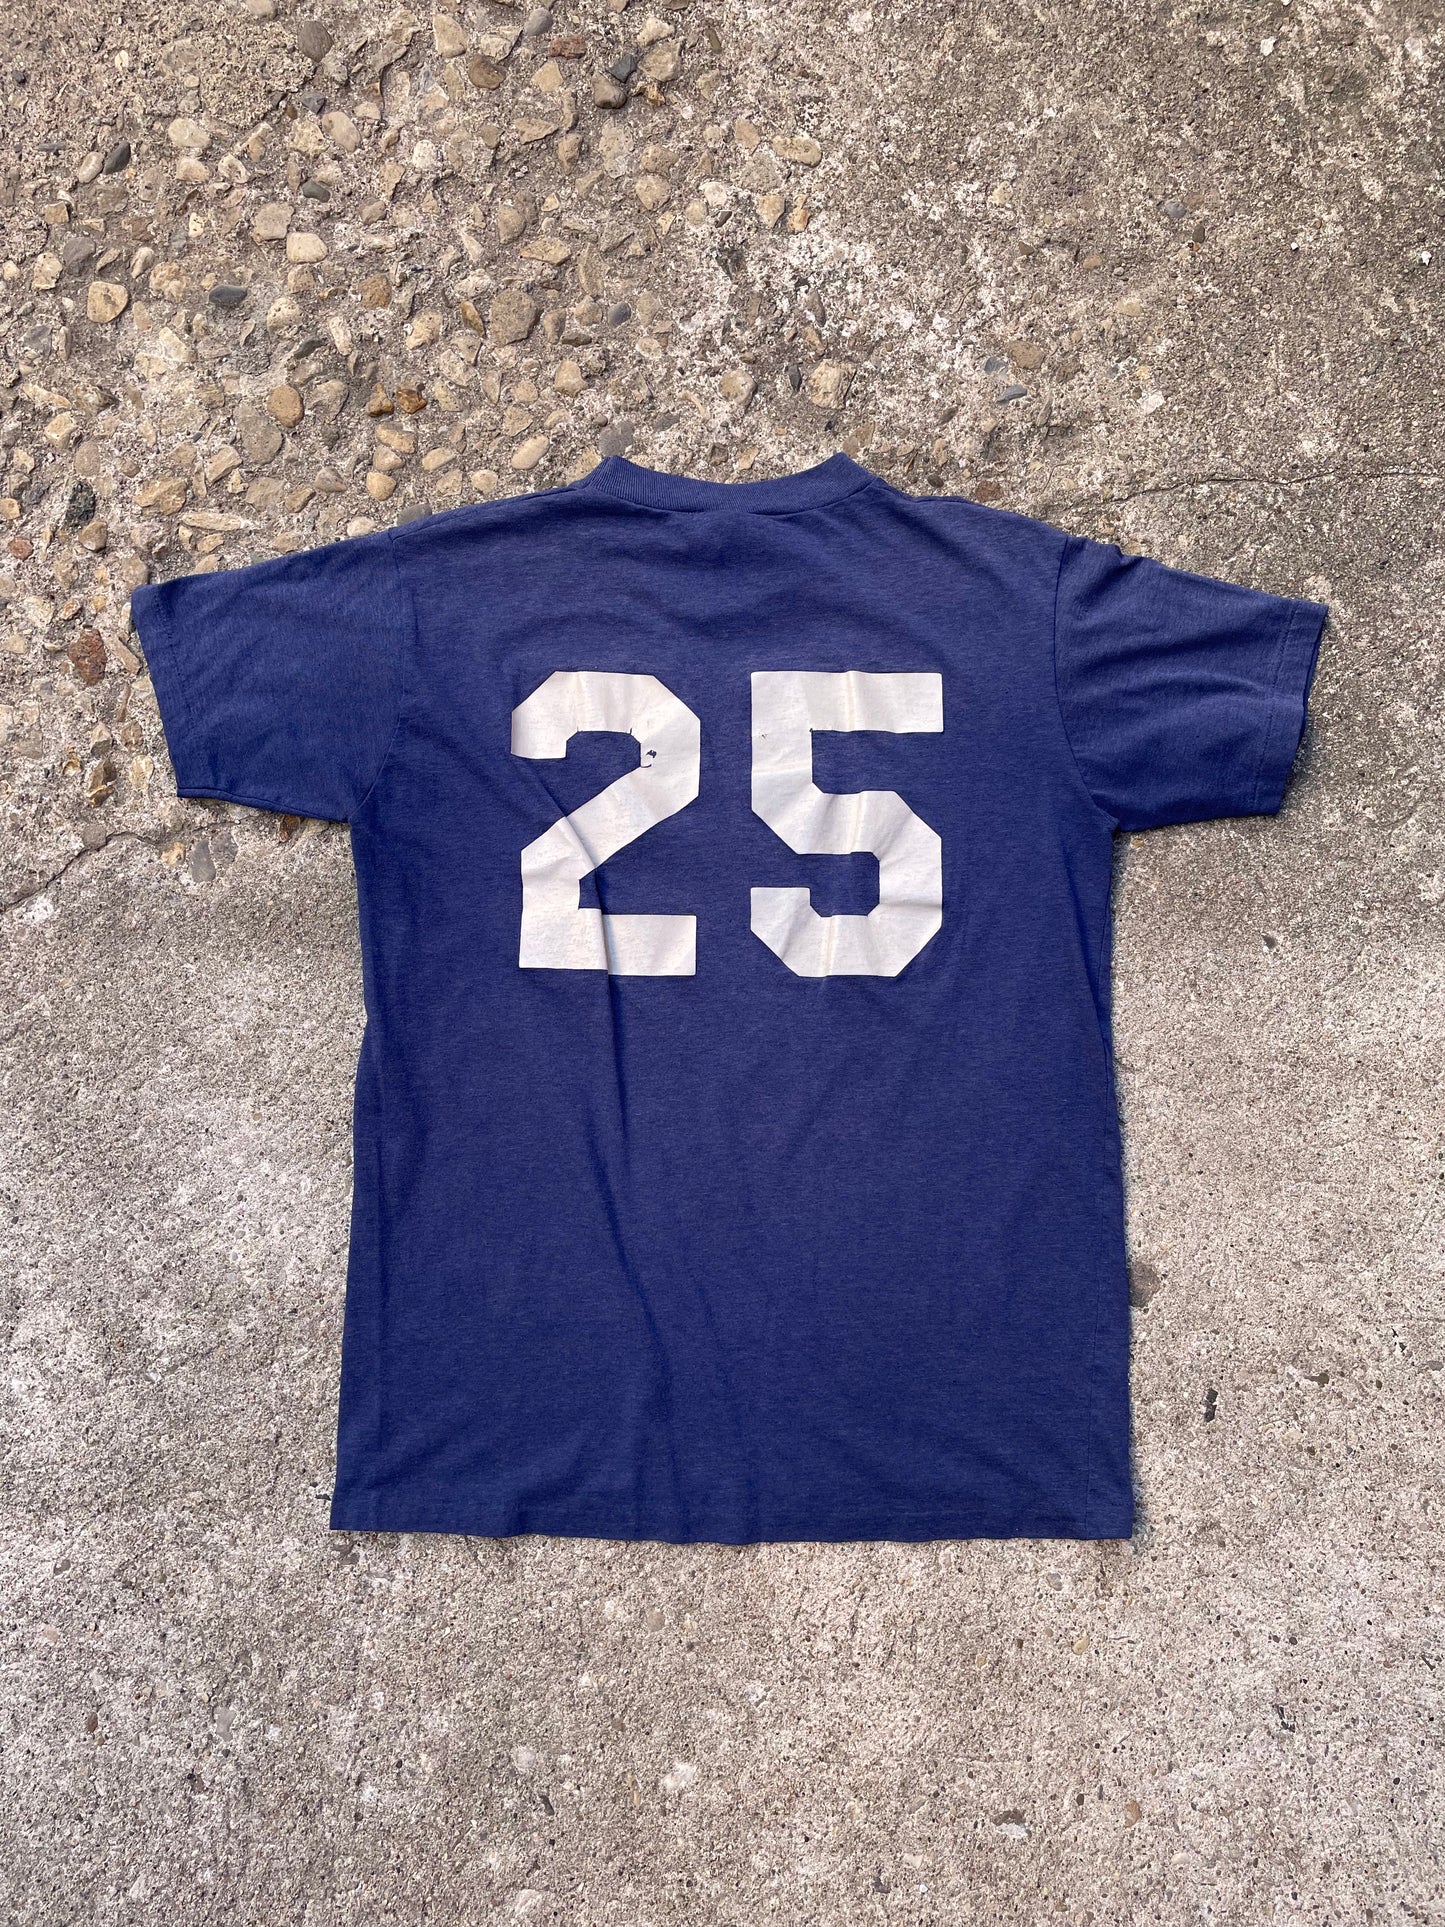 1990's St. Elizabeth Eagles T-Shirt - M